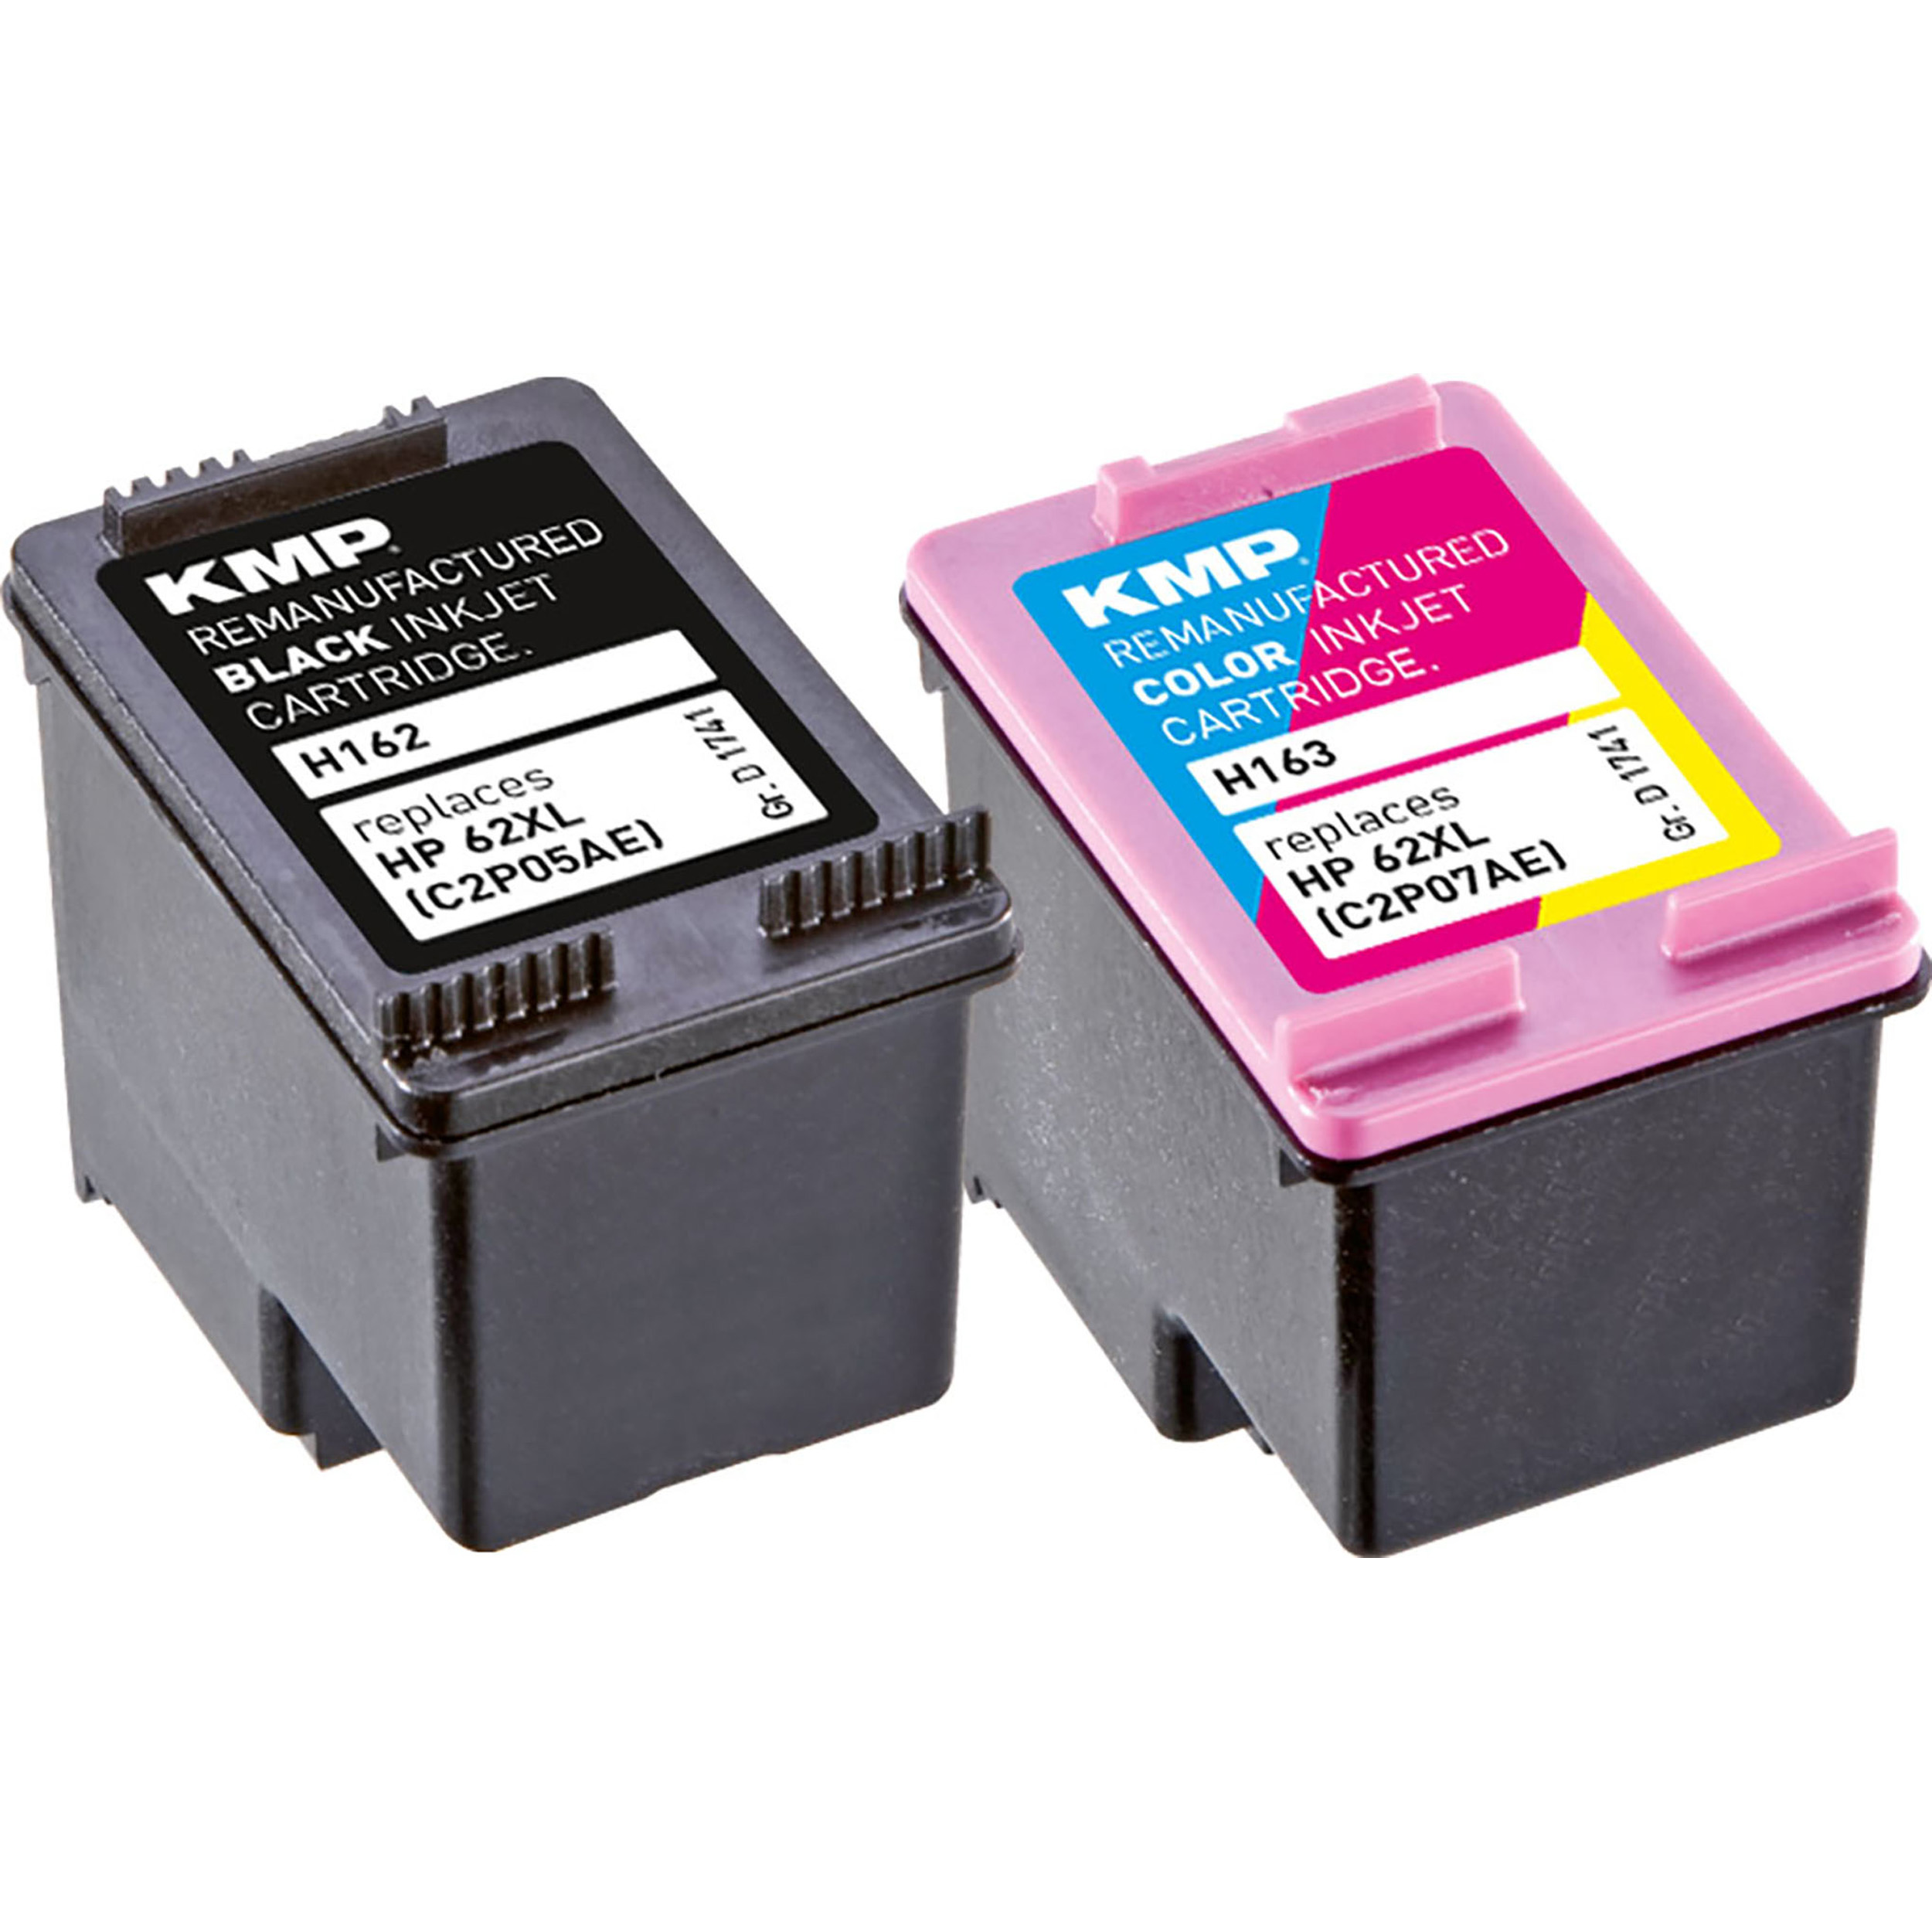 KMP Tintenpatrone für schwarz, BK,C,M,Y 3-farbig (C2P05AE, Cartridge Multipack Ink HP C2P07AE) 62XL C2P07AE) (C2P05AE